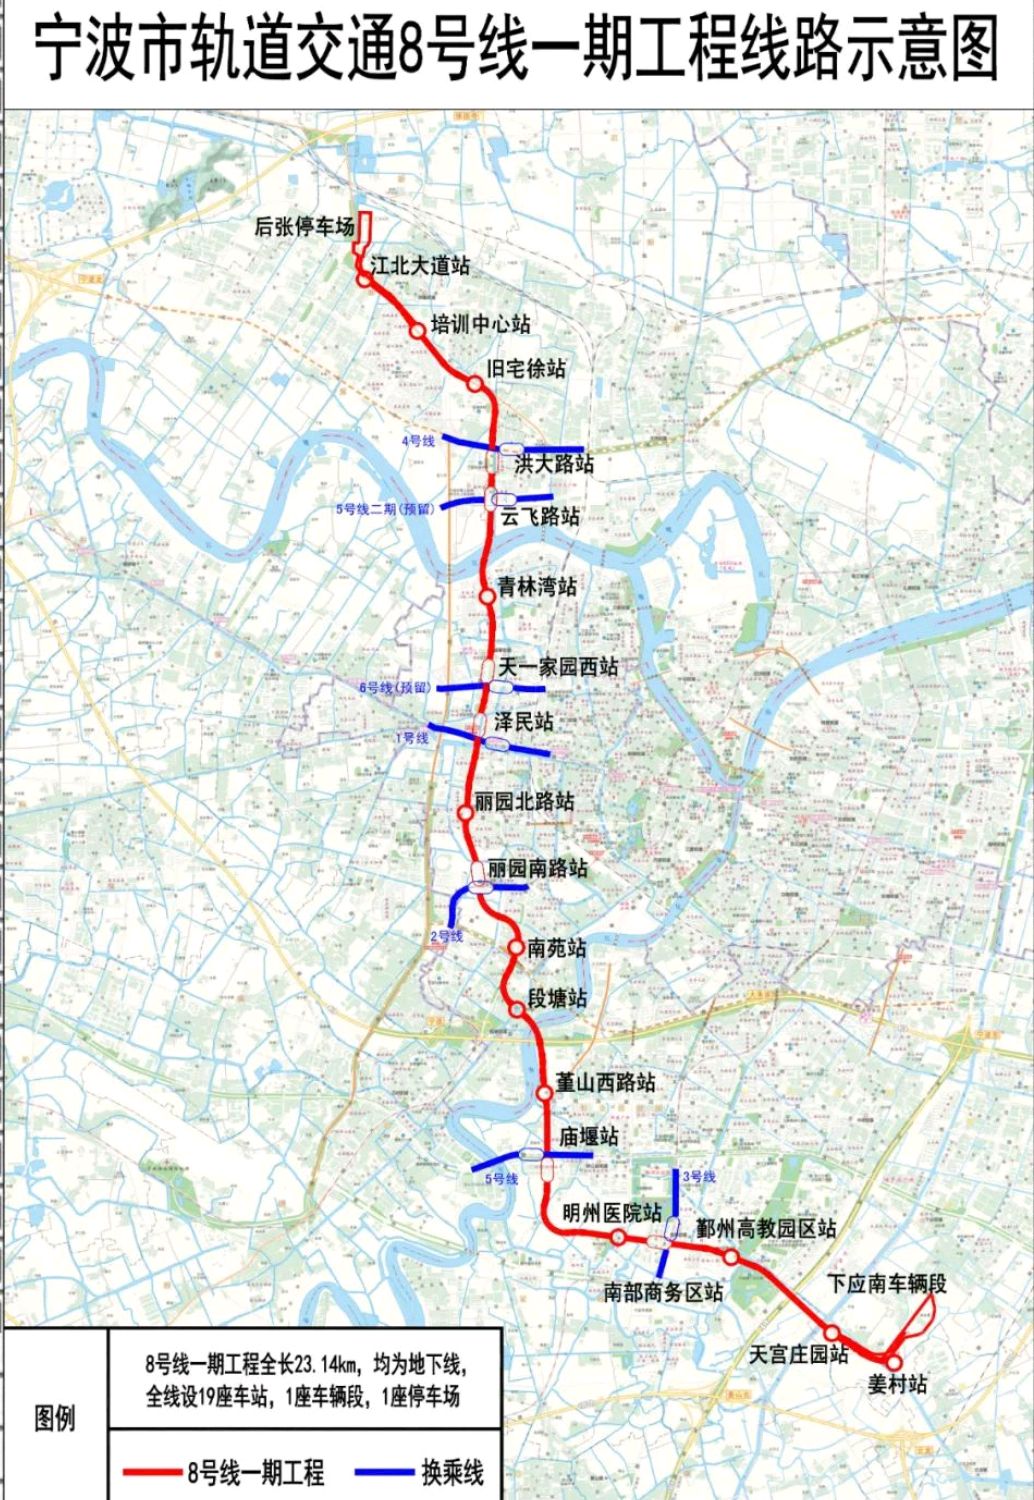 2026年6月30日完工!宁波8号线一期全部站点位置公之于众!